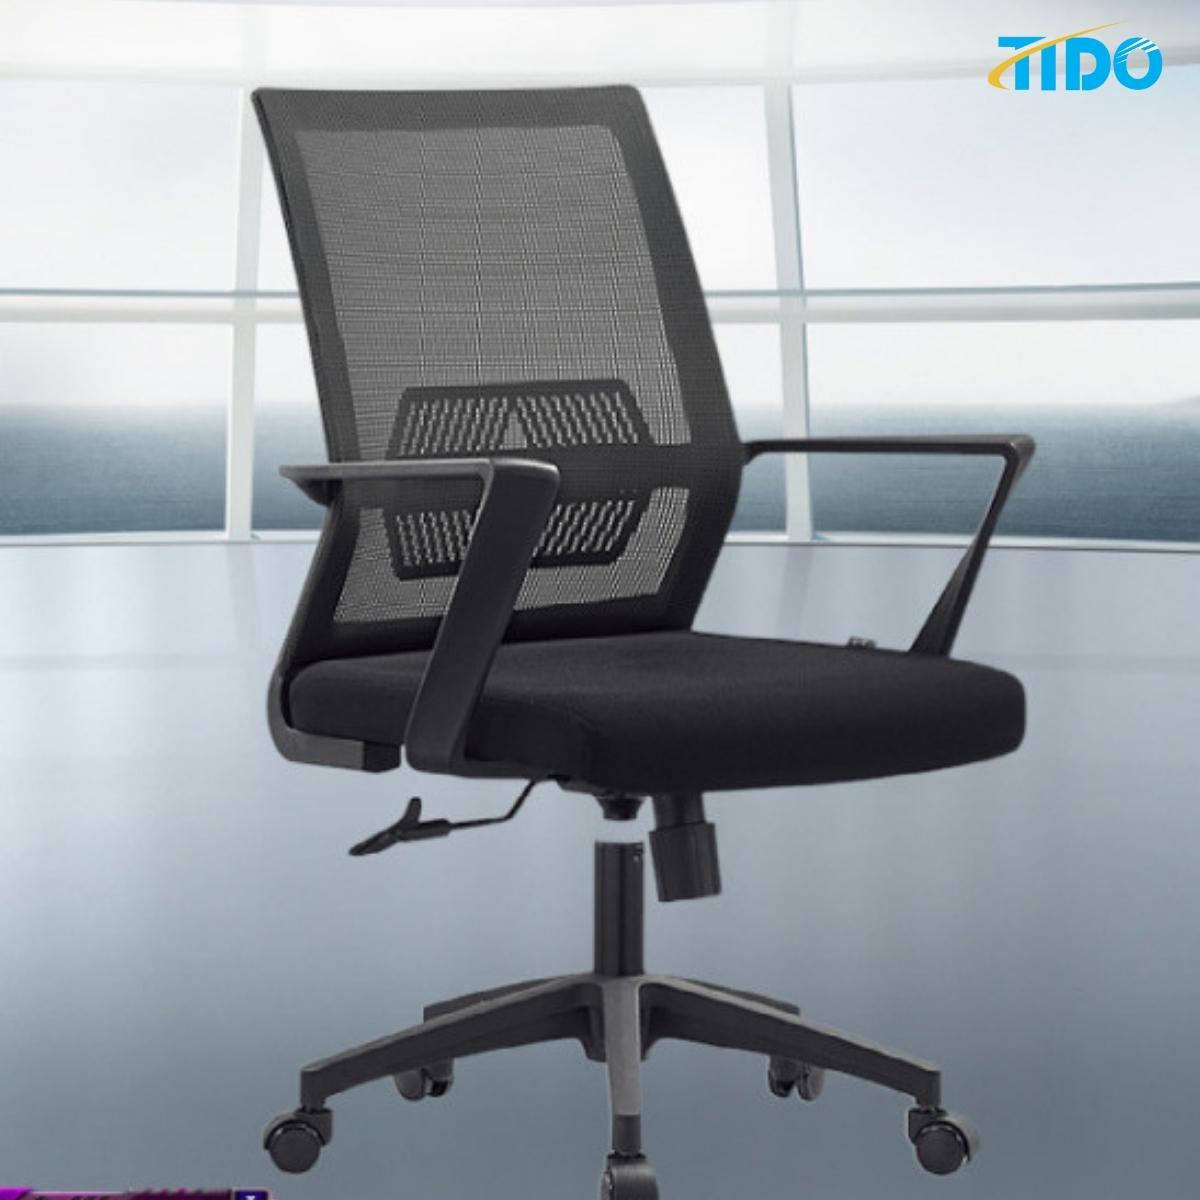 Ghế xoay văn phòng, tầm trung cấp - Hàng chính hãng TIDO - Lắp sẵn thân ghế dùng ngay - TI-GX03